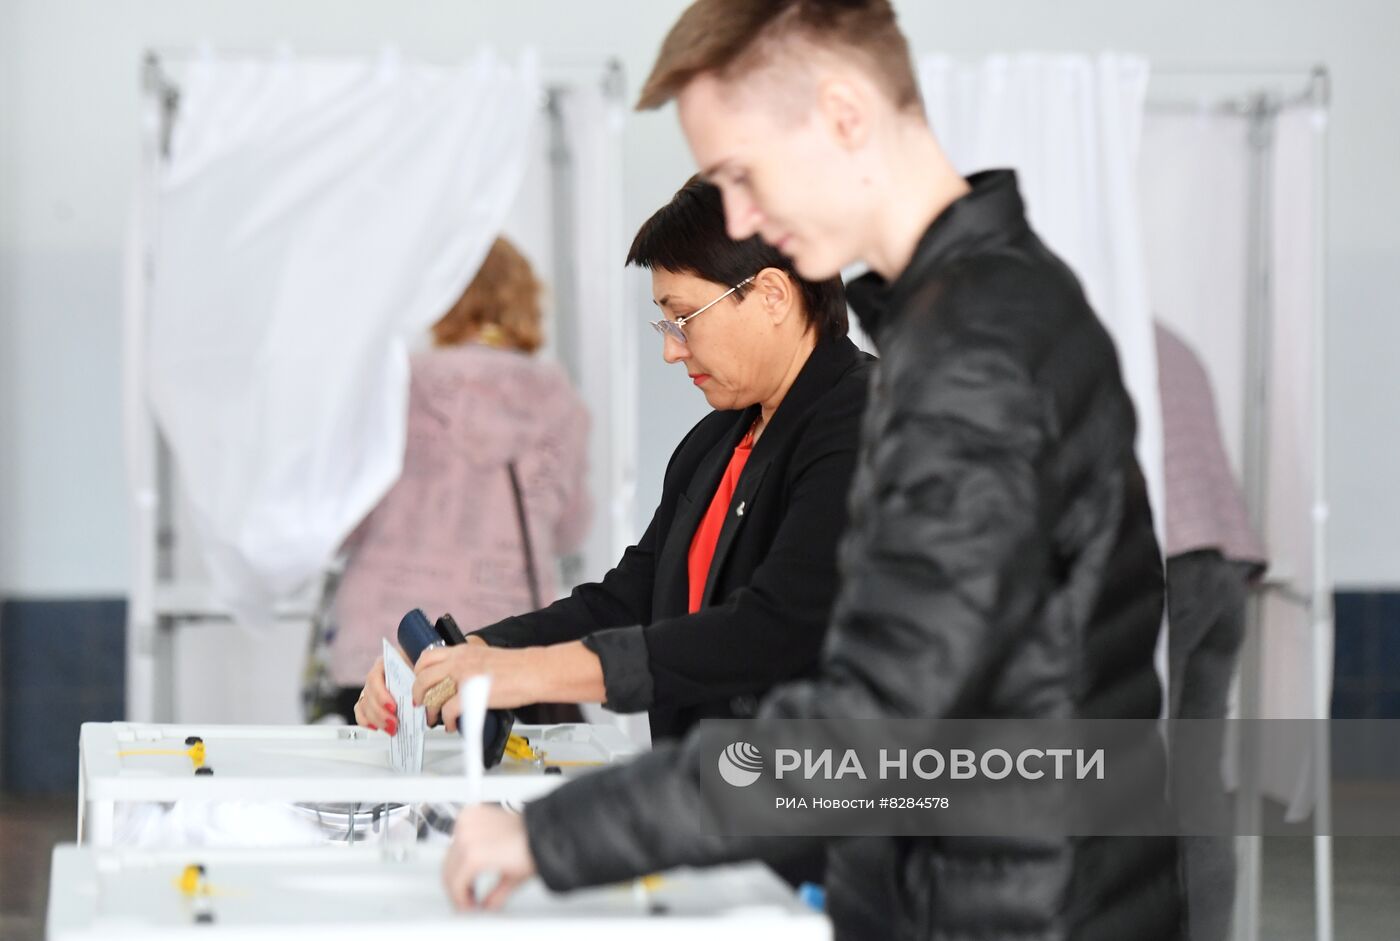 Референдум на освобожденных территориях о присоединении к РФ